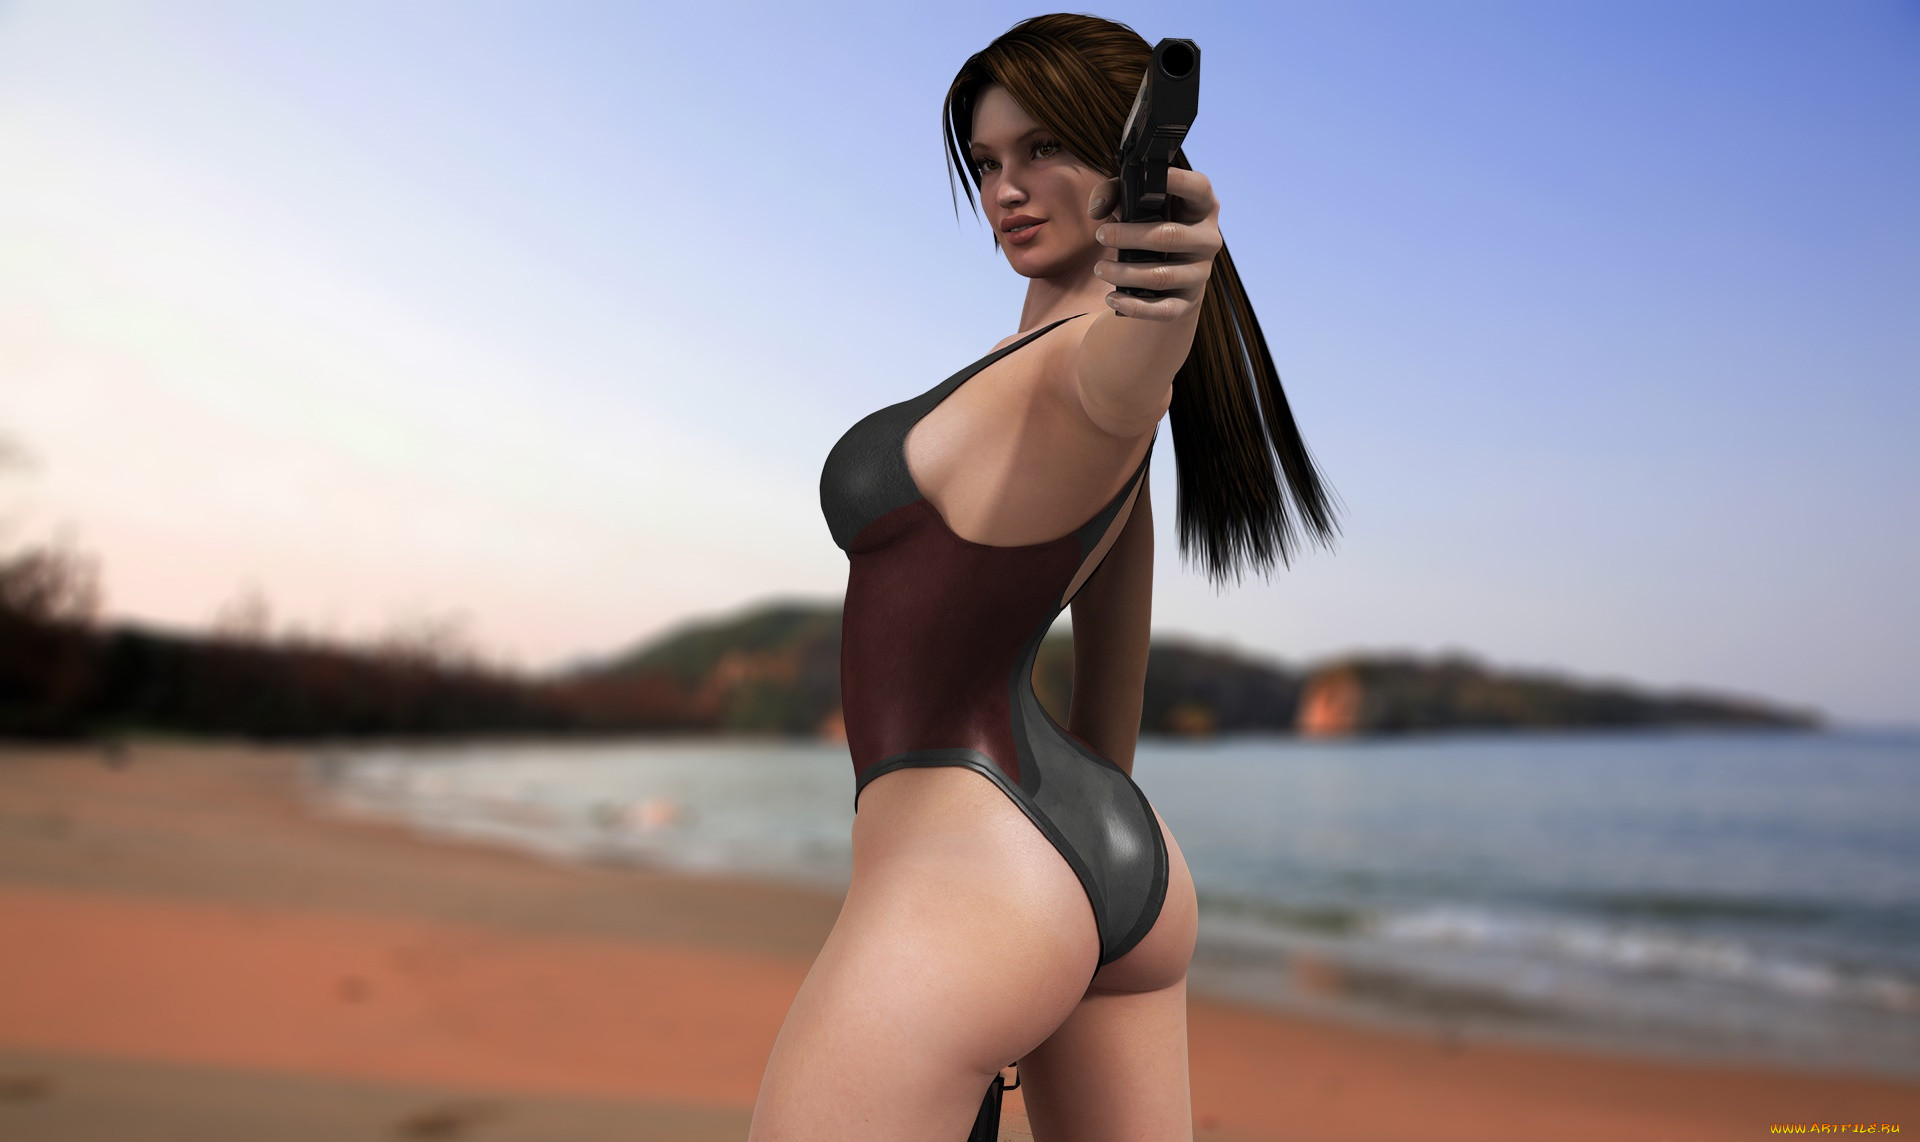 Сексуальная героиня видеоигры в гламурном купальнике